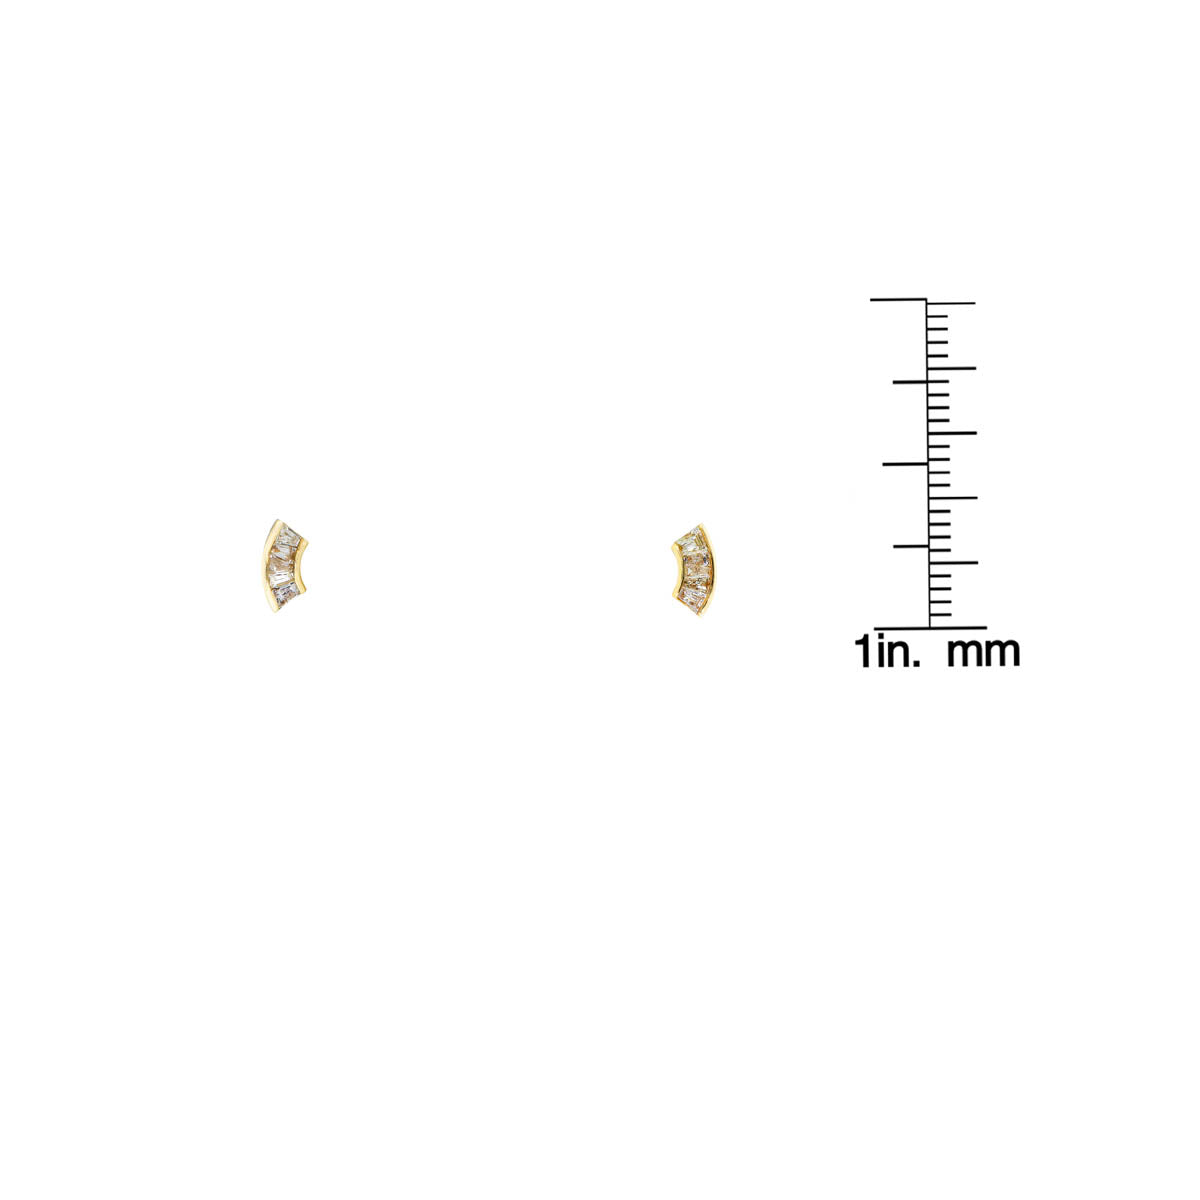 white diamond fan earrings with ruler